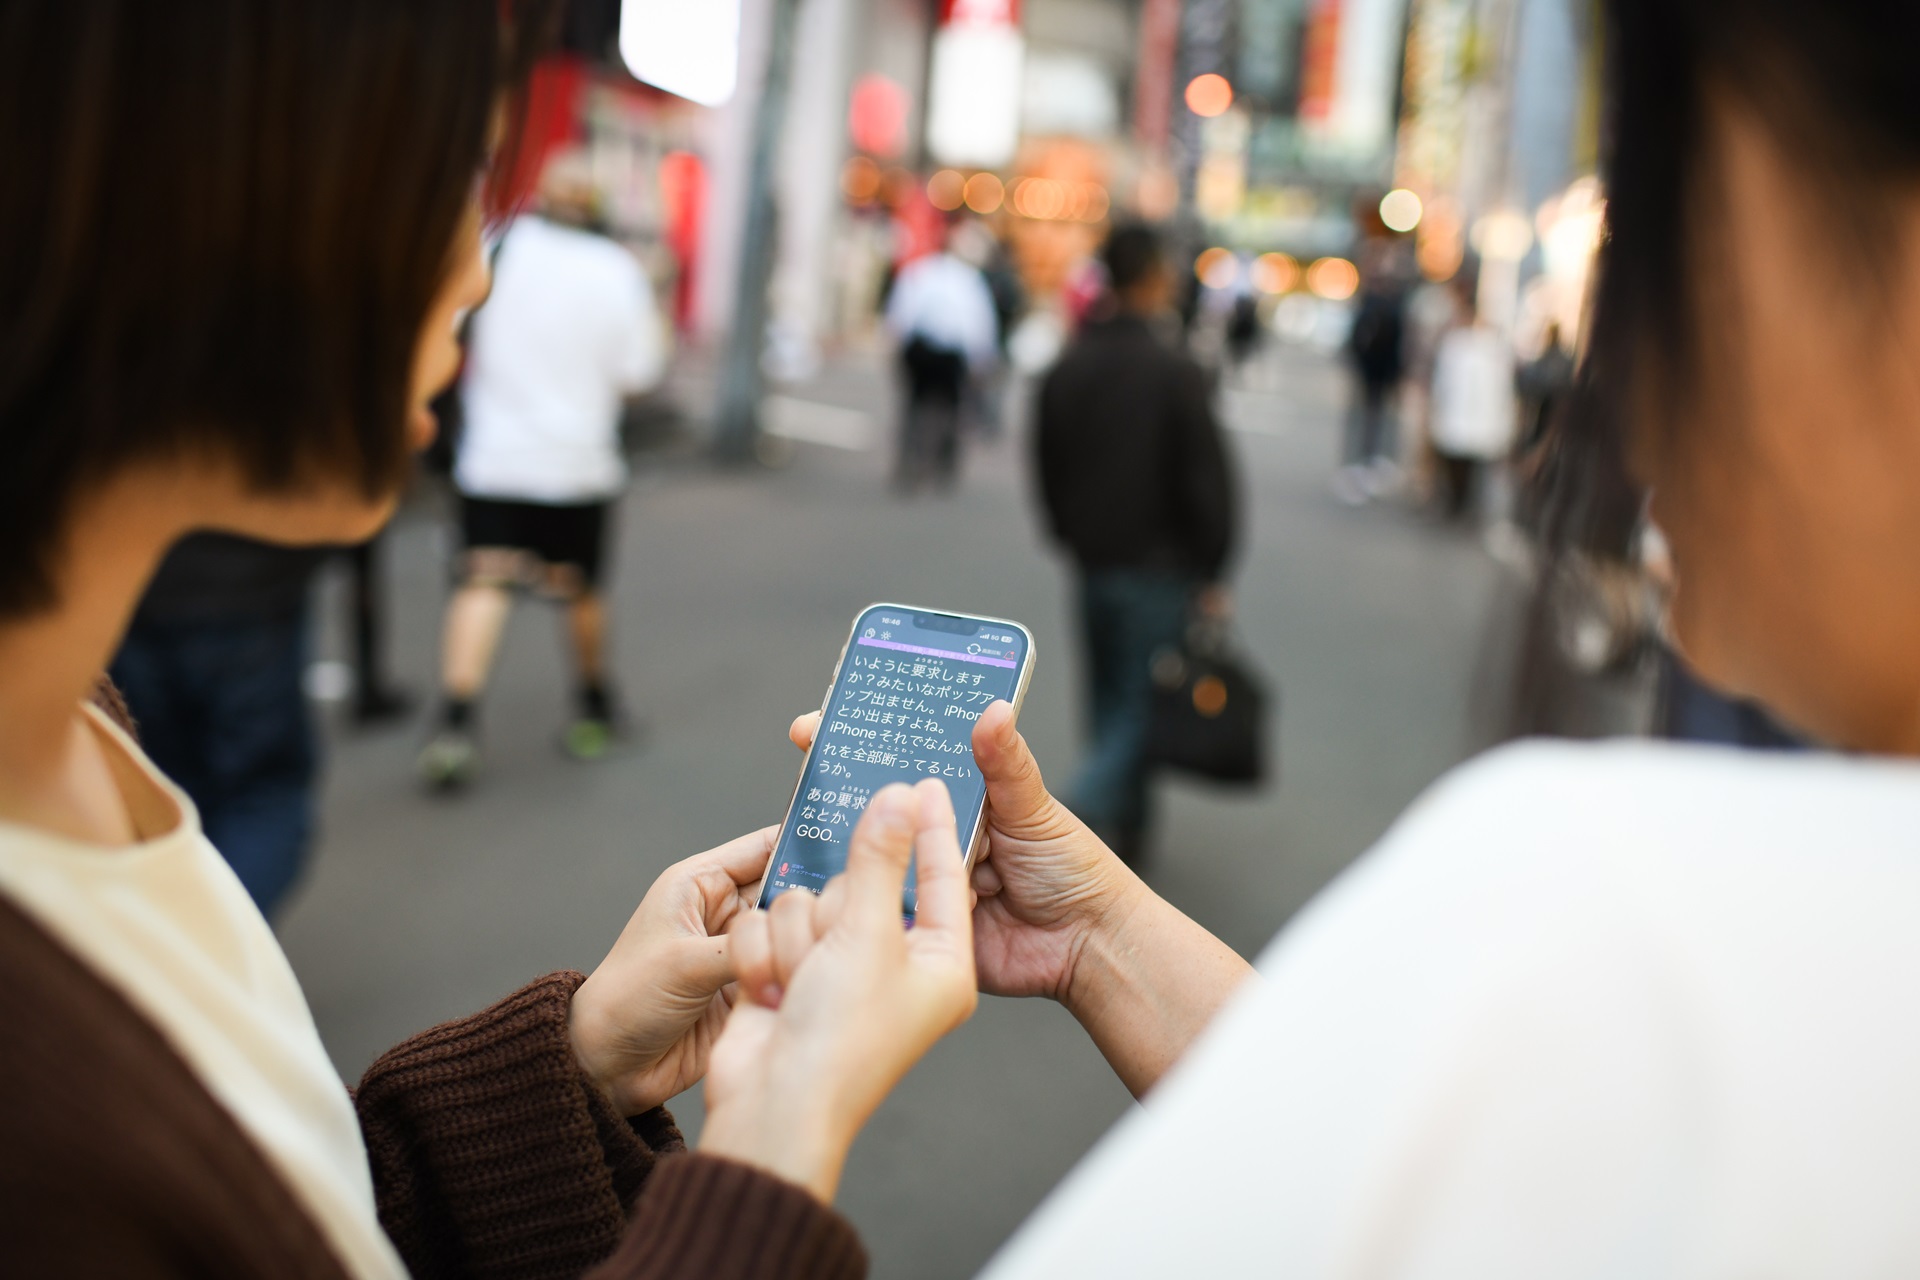 聴覚情報処理障害のある添田洋美さんとアプリの開発元である株式会社アイシンの大場美乃里さんが、街中でアプリを使用しながら会話している様子。写真: 林典子 for Microsoft